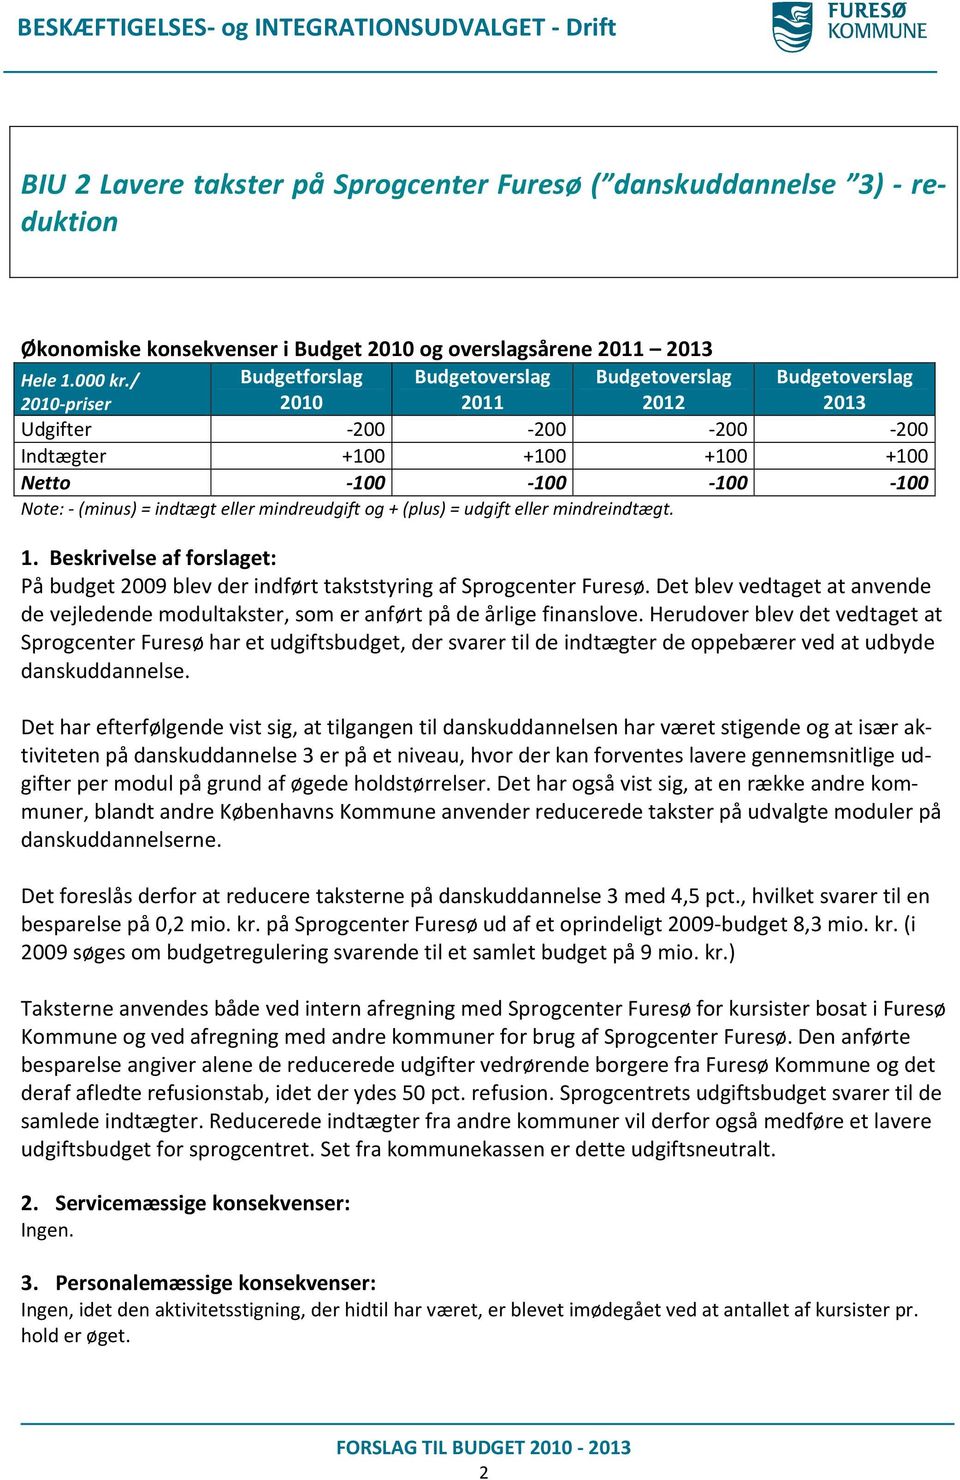 Herudover blev det vedtaget at Sprogcenter Furesø har et udgiftsbudget, der svarer til de indtægter de oppebærer ved at udbyde danskuddannelse.